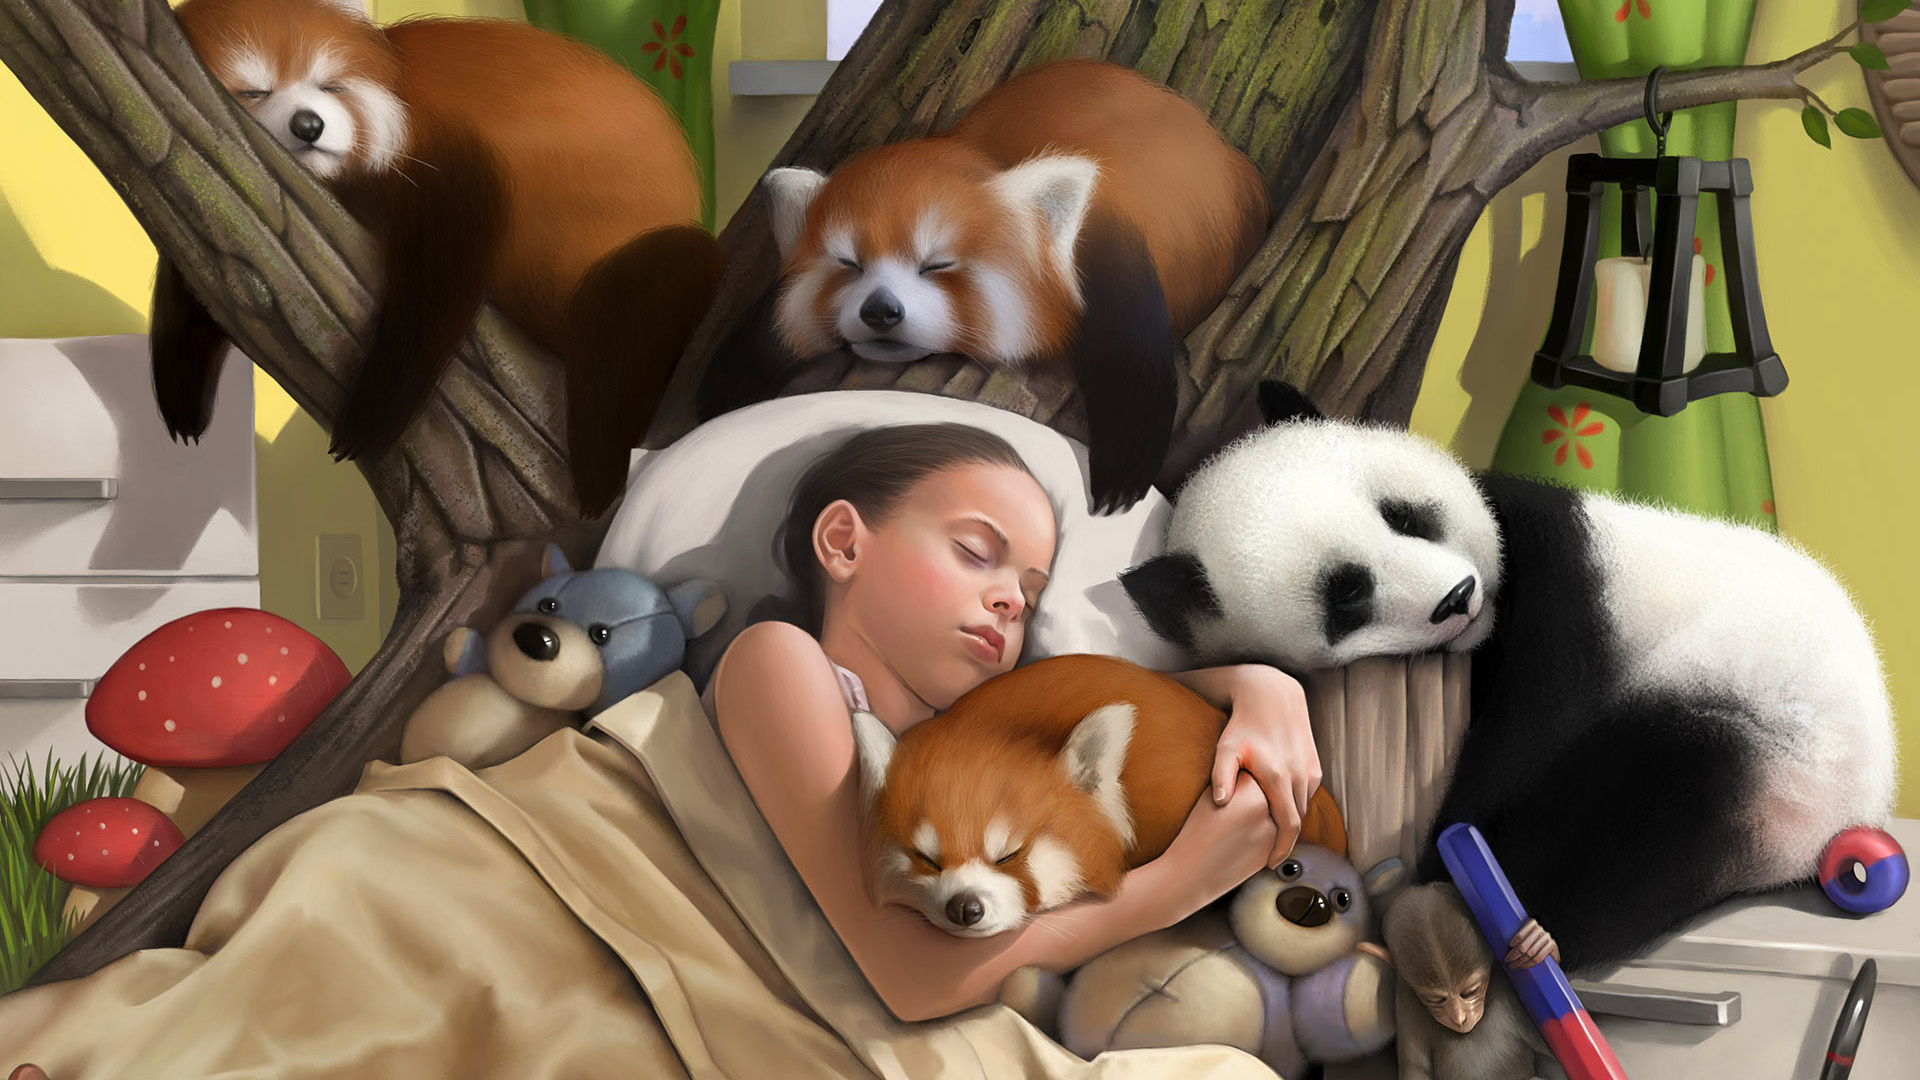 女孩,树,蘑菇,动物,玩具,小浣熊,熊猫,小猴,壁纸